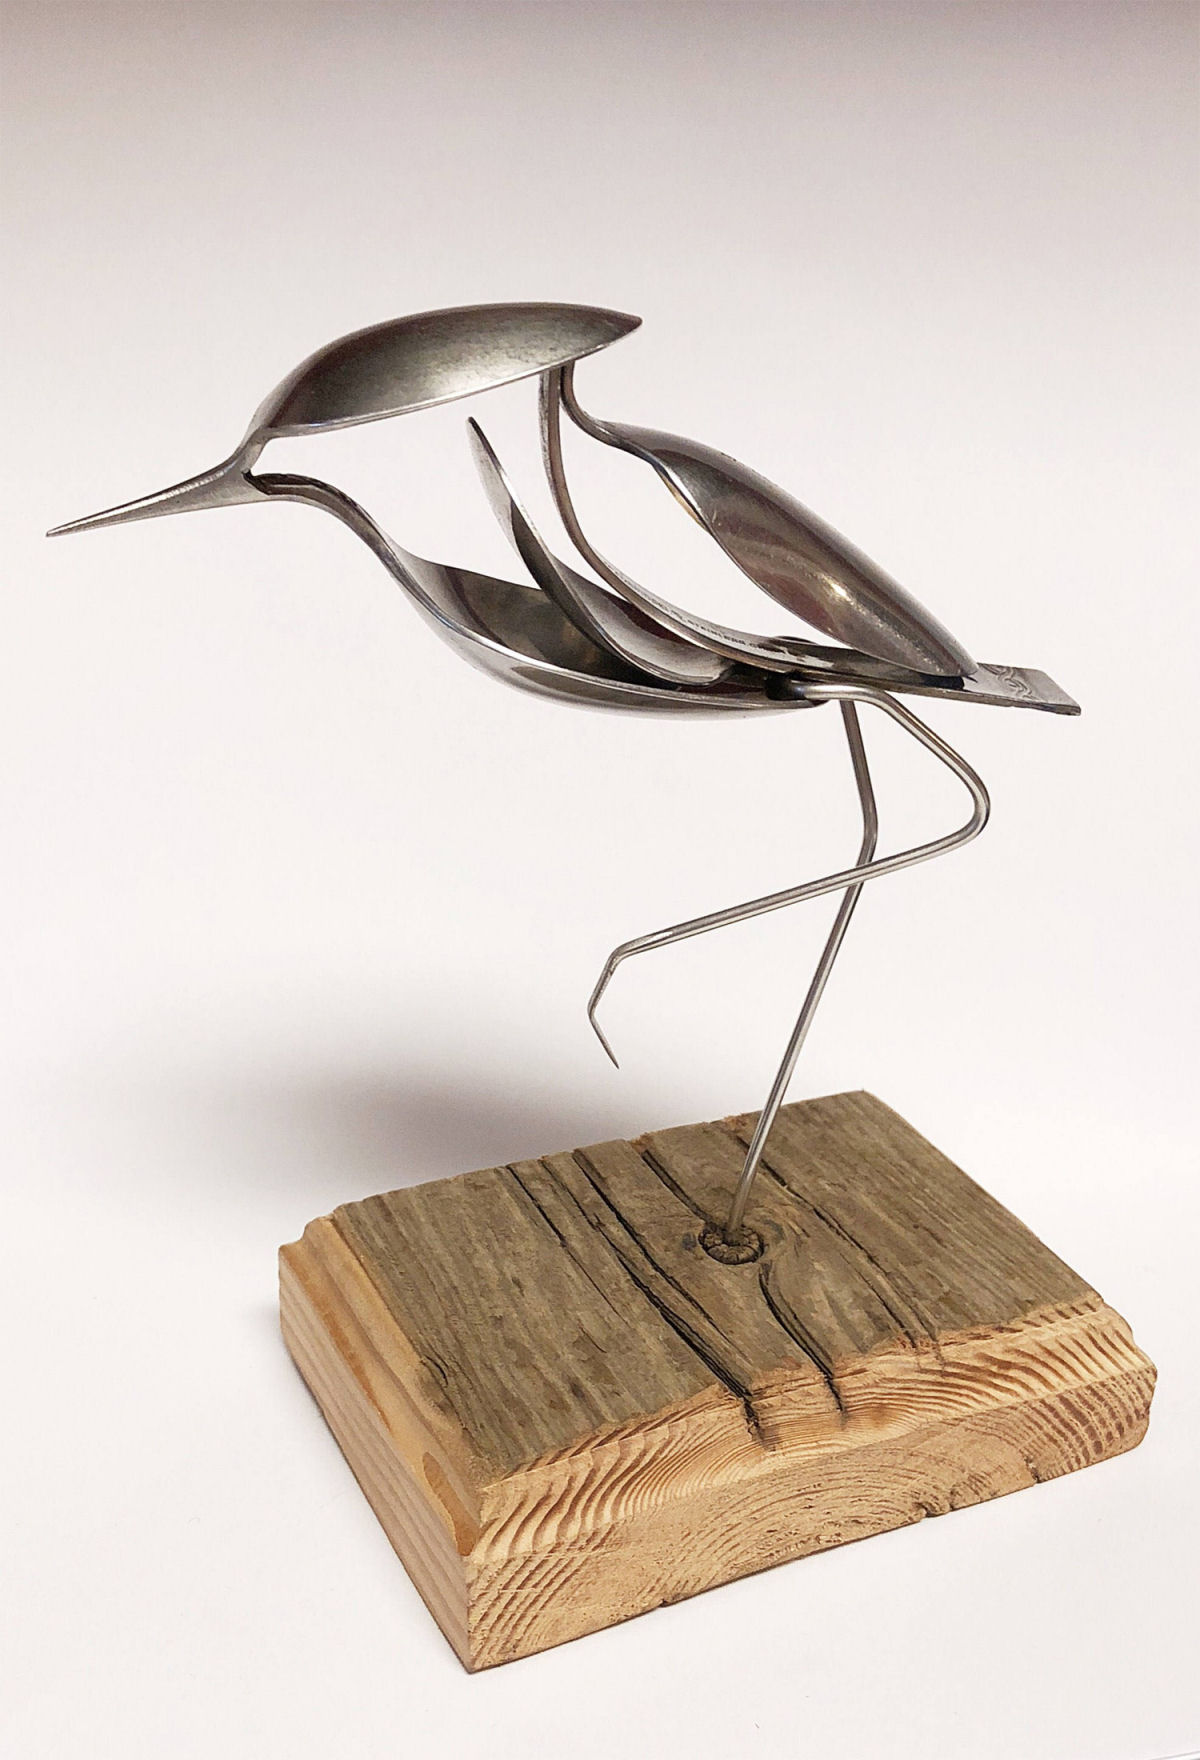 Artista continua usando sucata de prataria para criar lindas esculturas animais 09